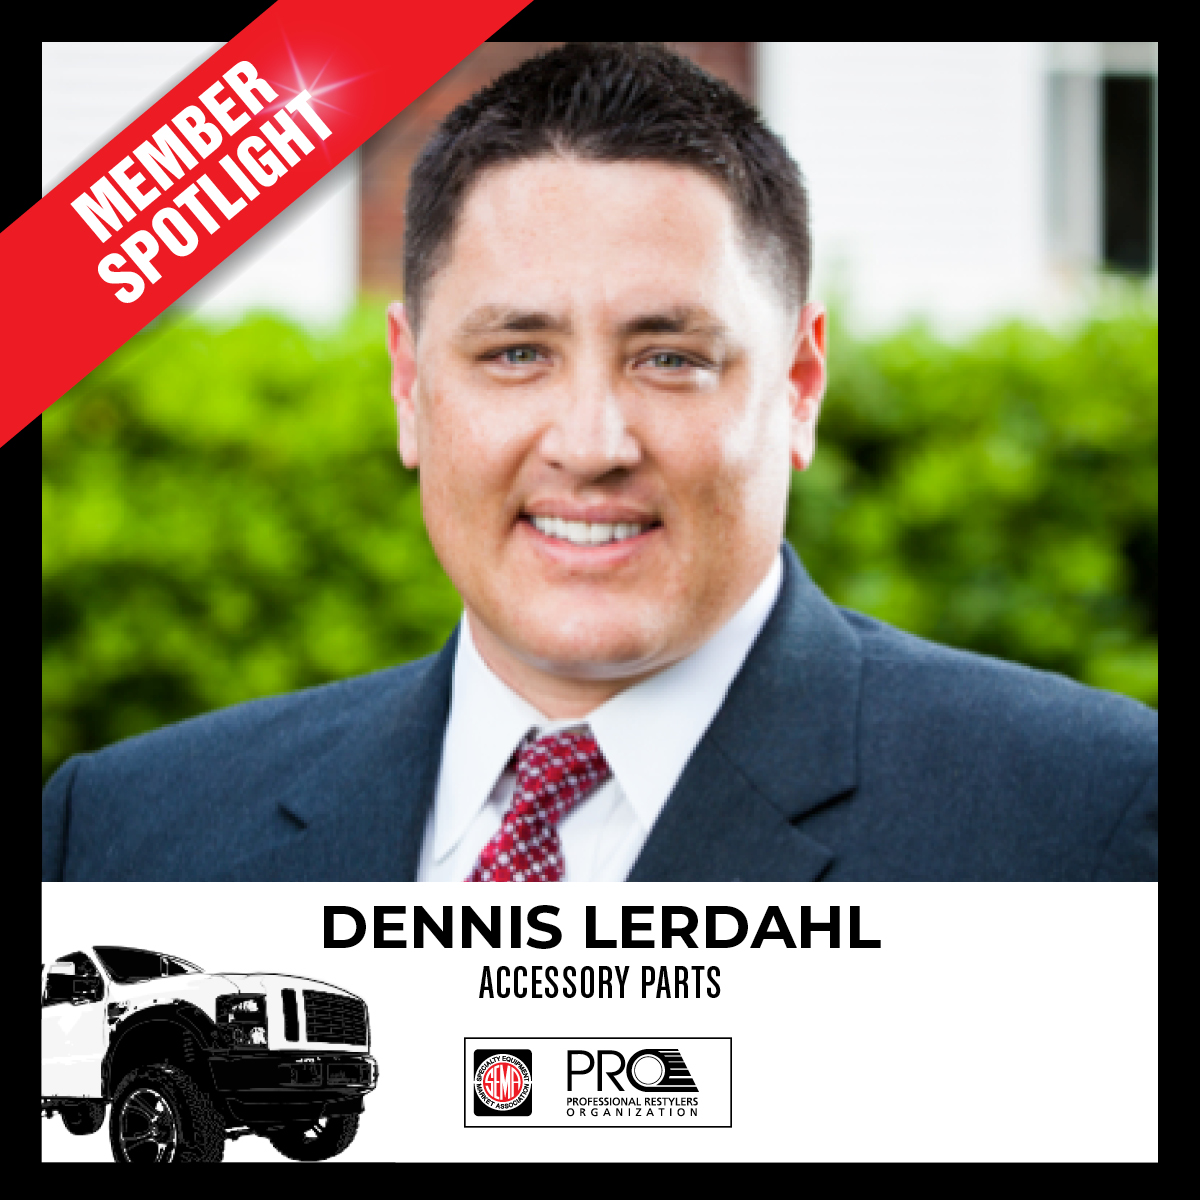 PRO Member Spotlight - Dennis Lerdahl